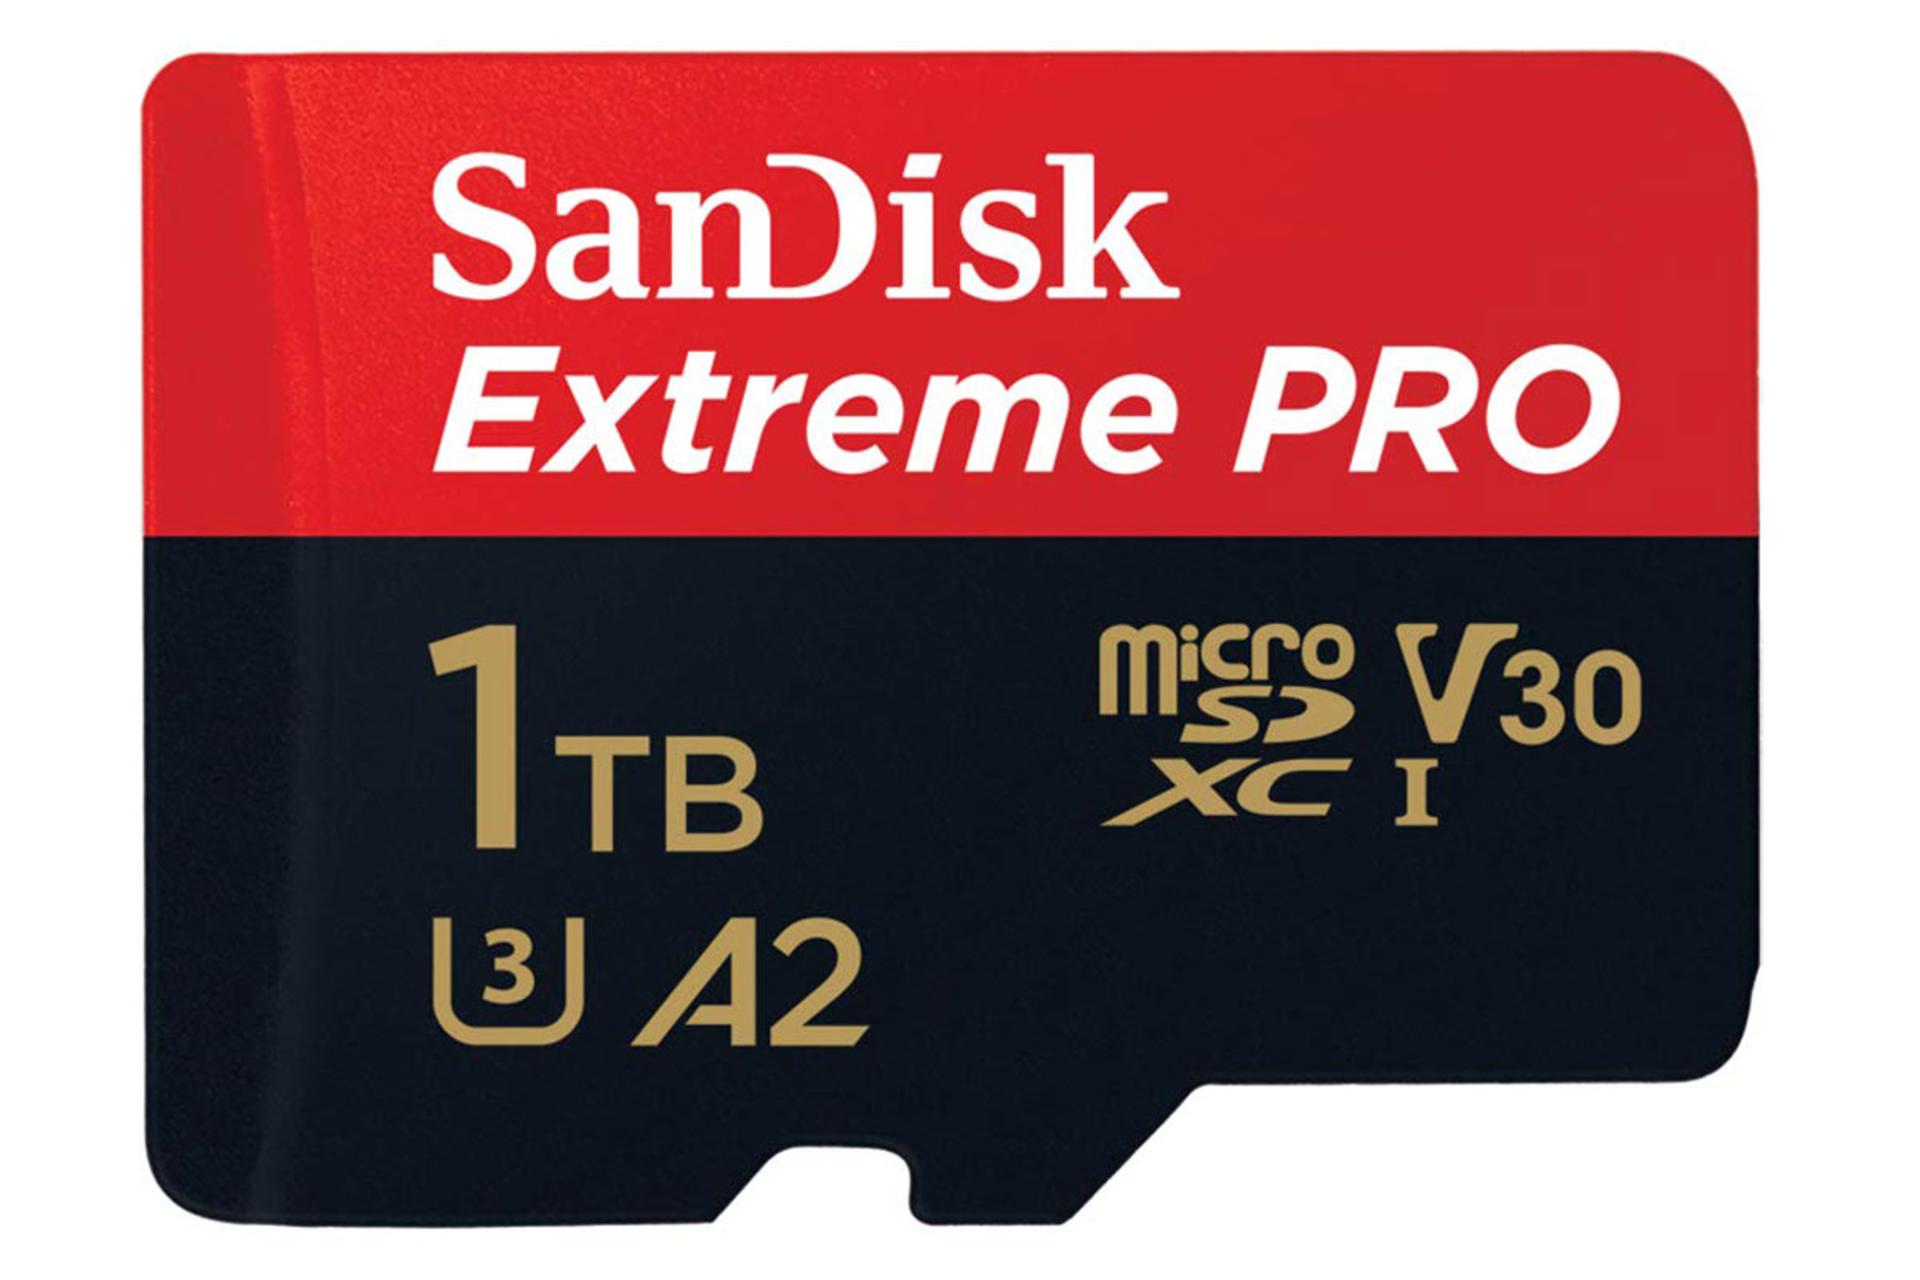 مرجع متخصصين ايران نماي روبرو كارت حافظه سن ديسك microSDXC با ظرفيت 1 ترابايت مدل Extreme Pro V30 A2 كلاس 10